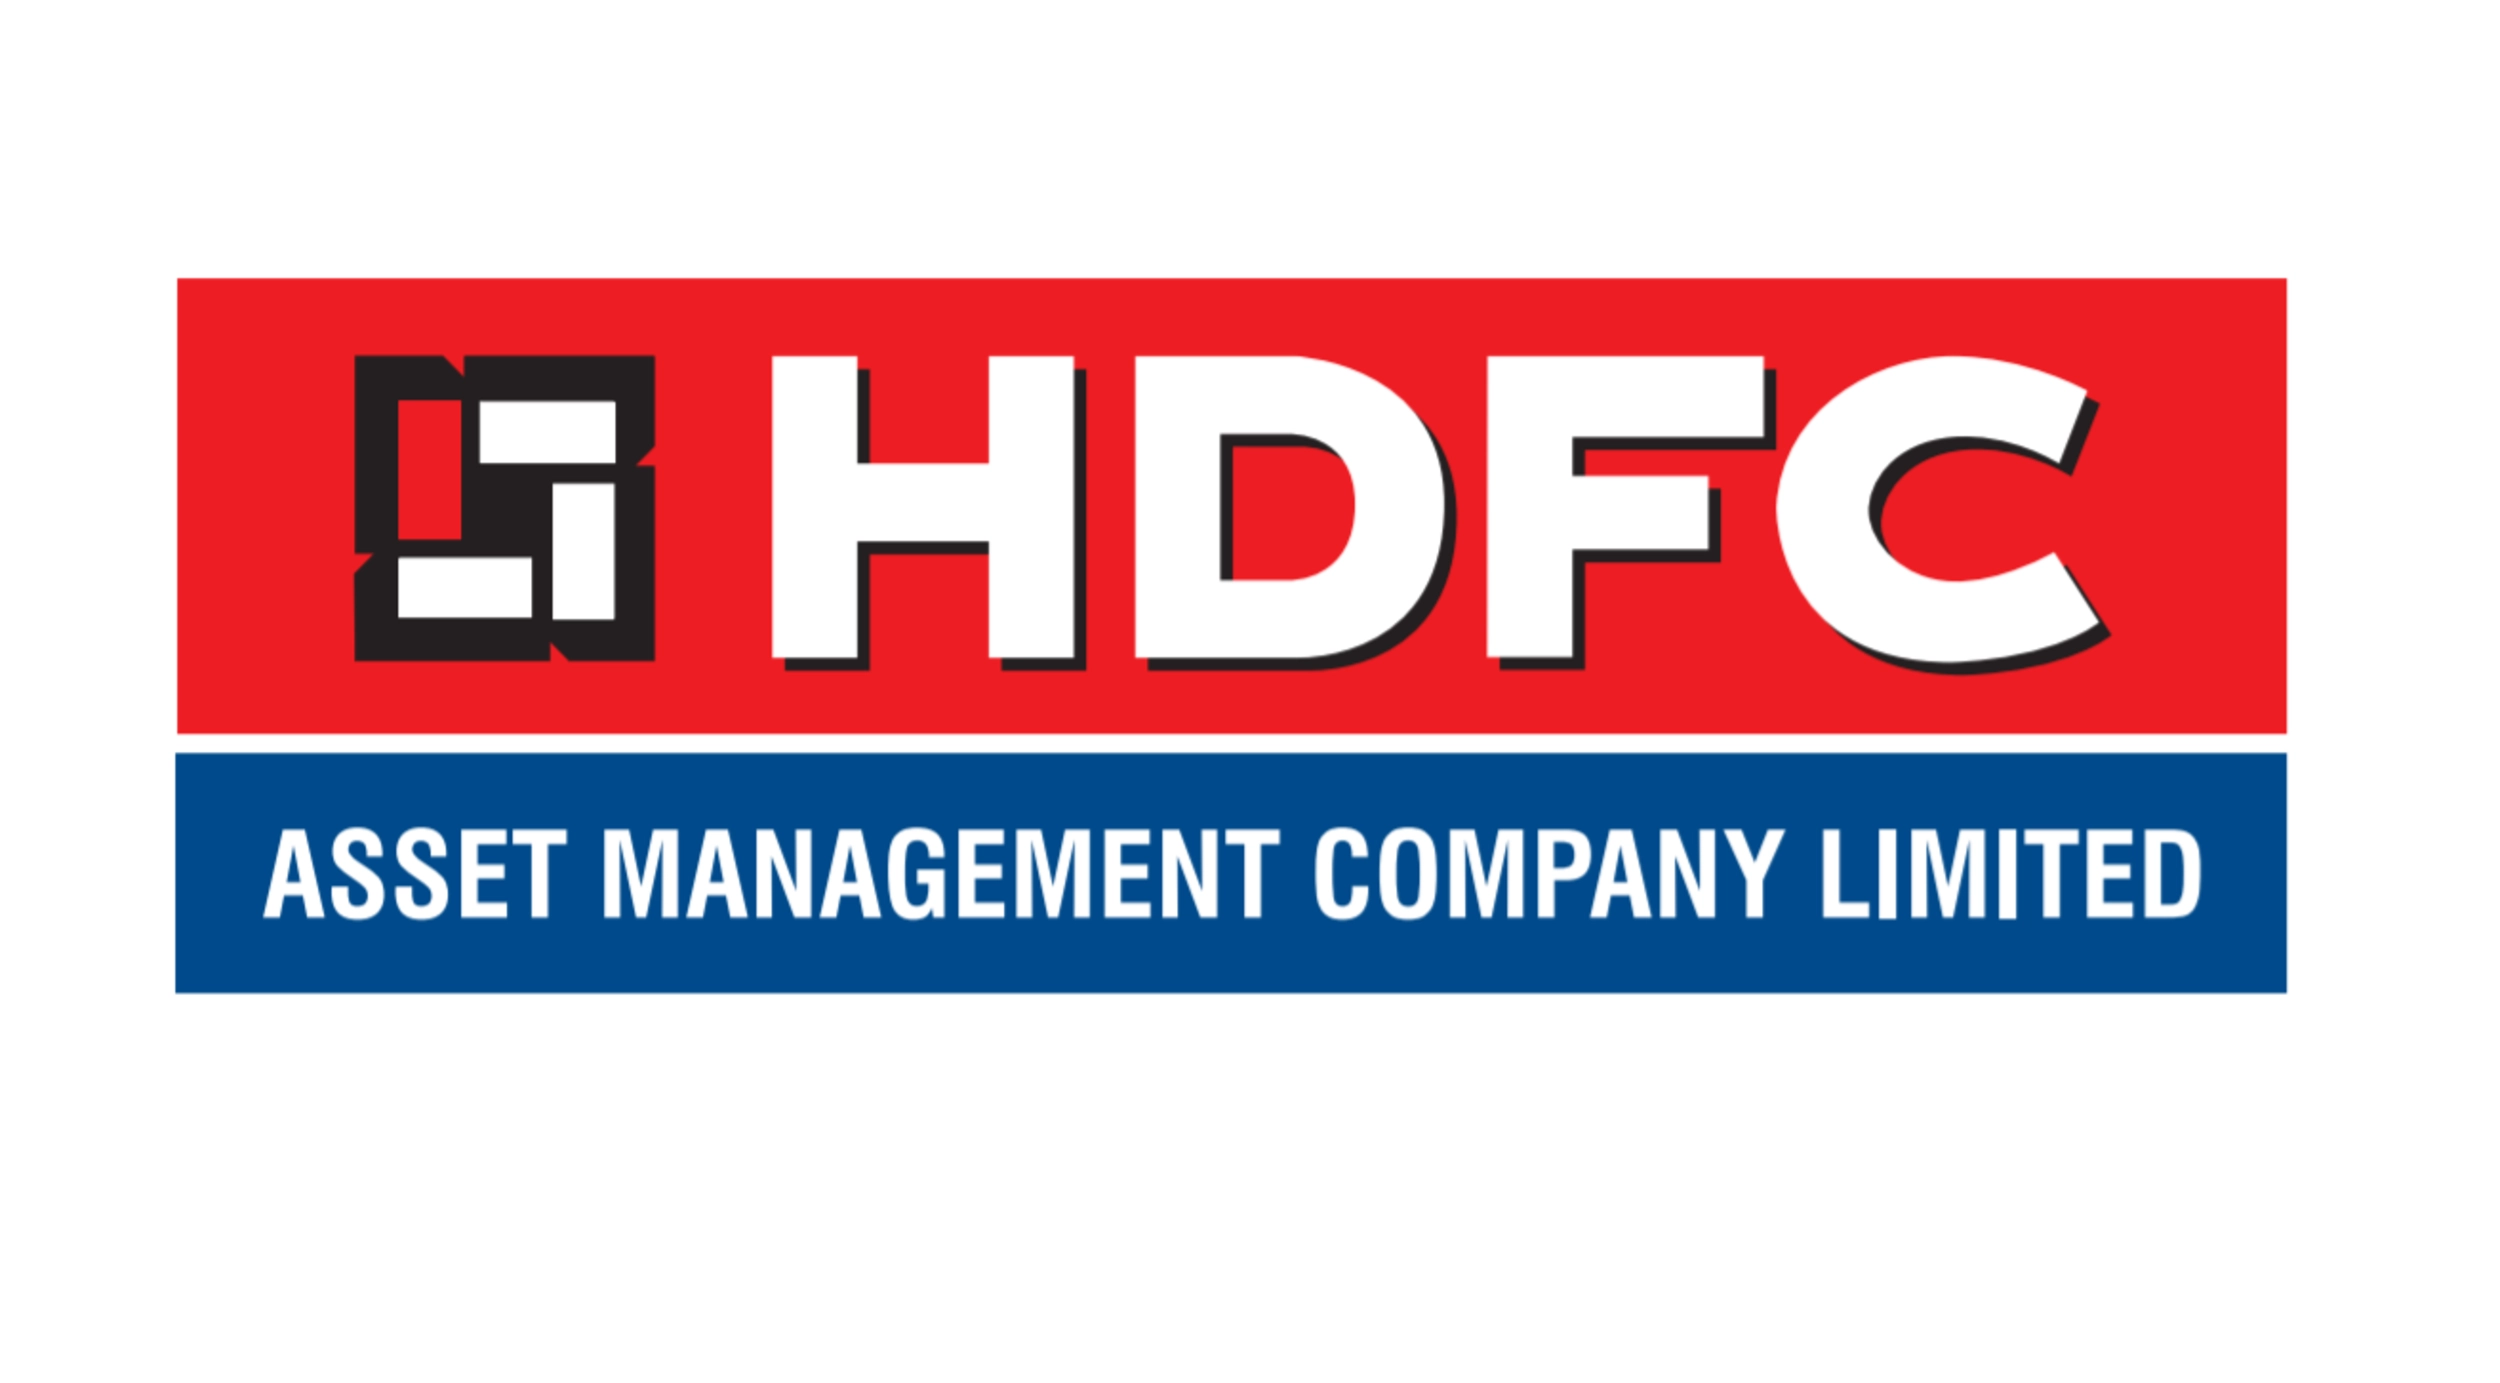 HDFC Asset